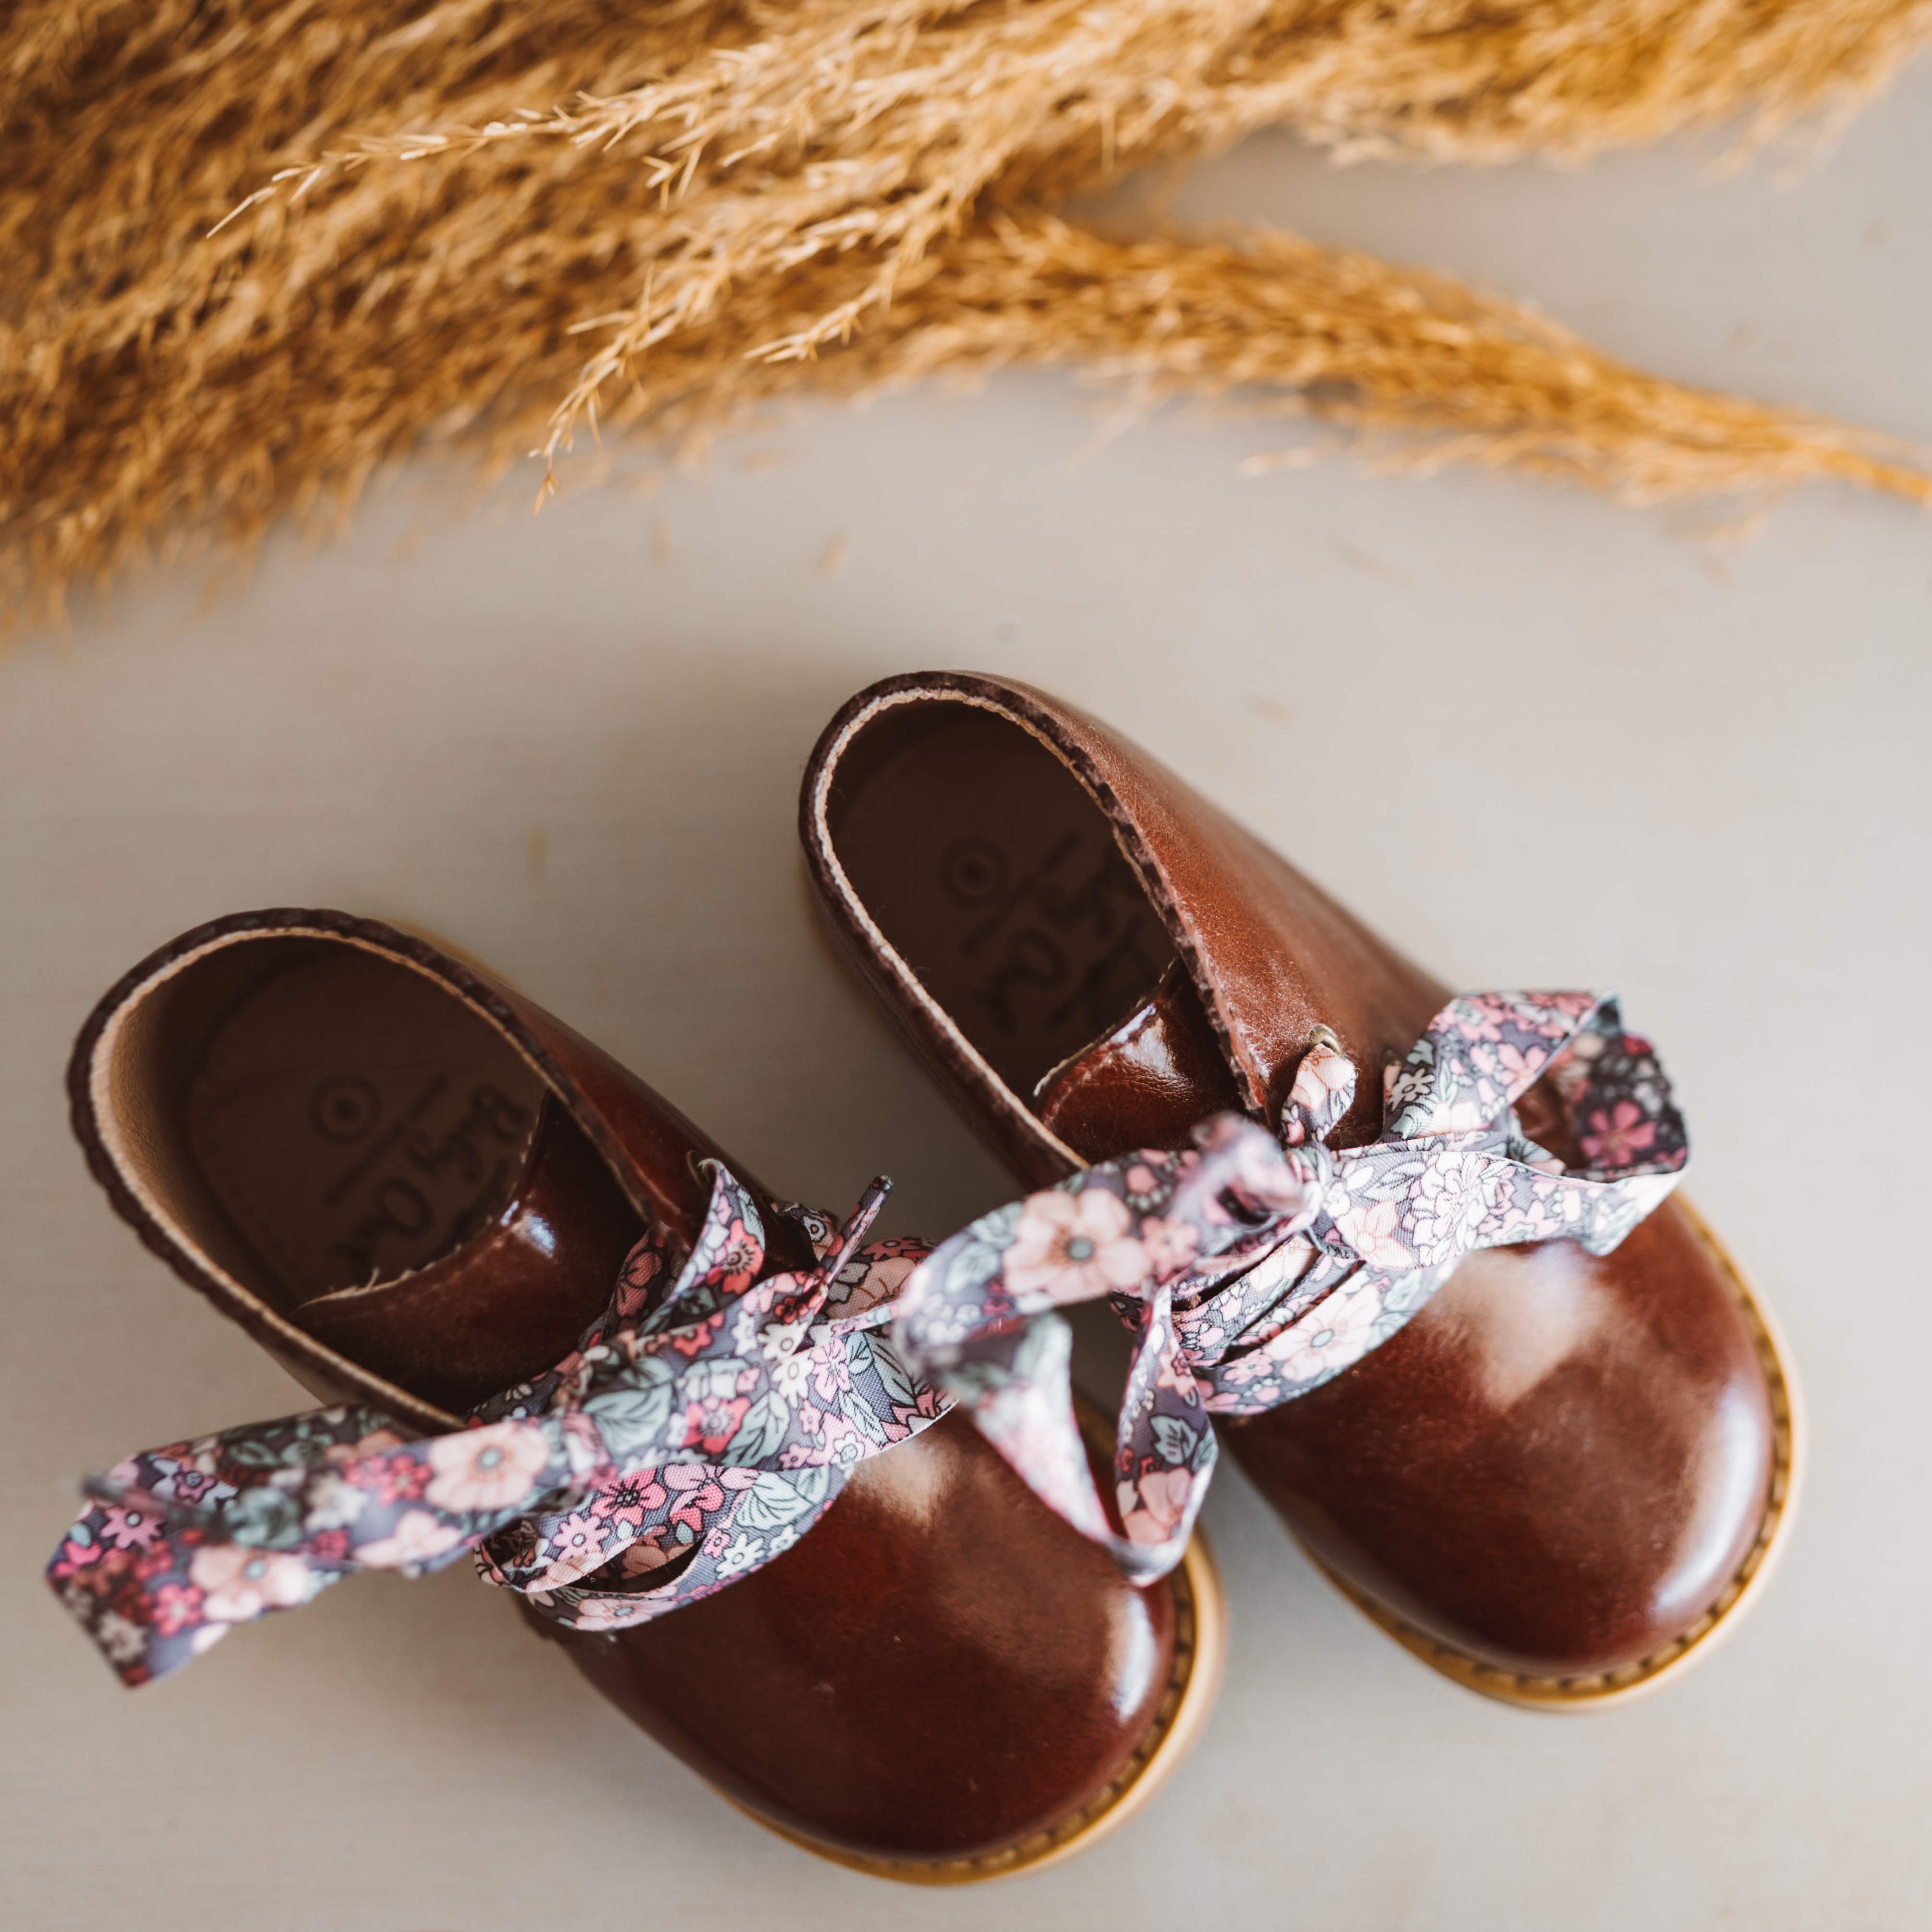 παιδική μπότα για κορίτσια με λουλουδένιο κορδόνι